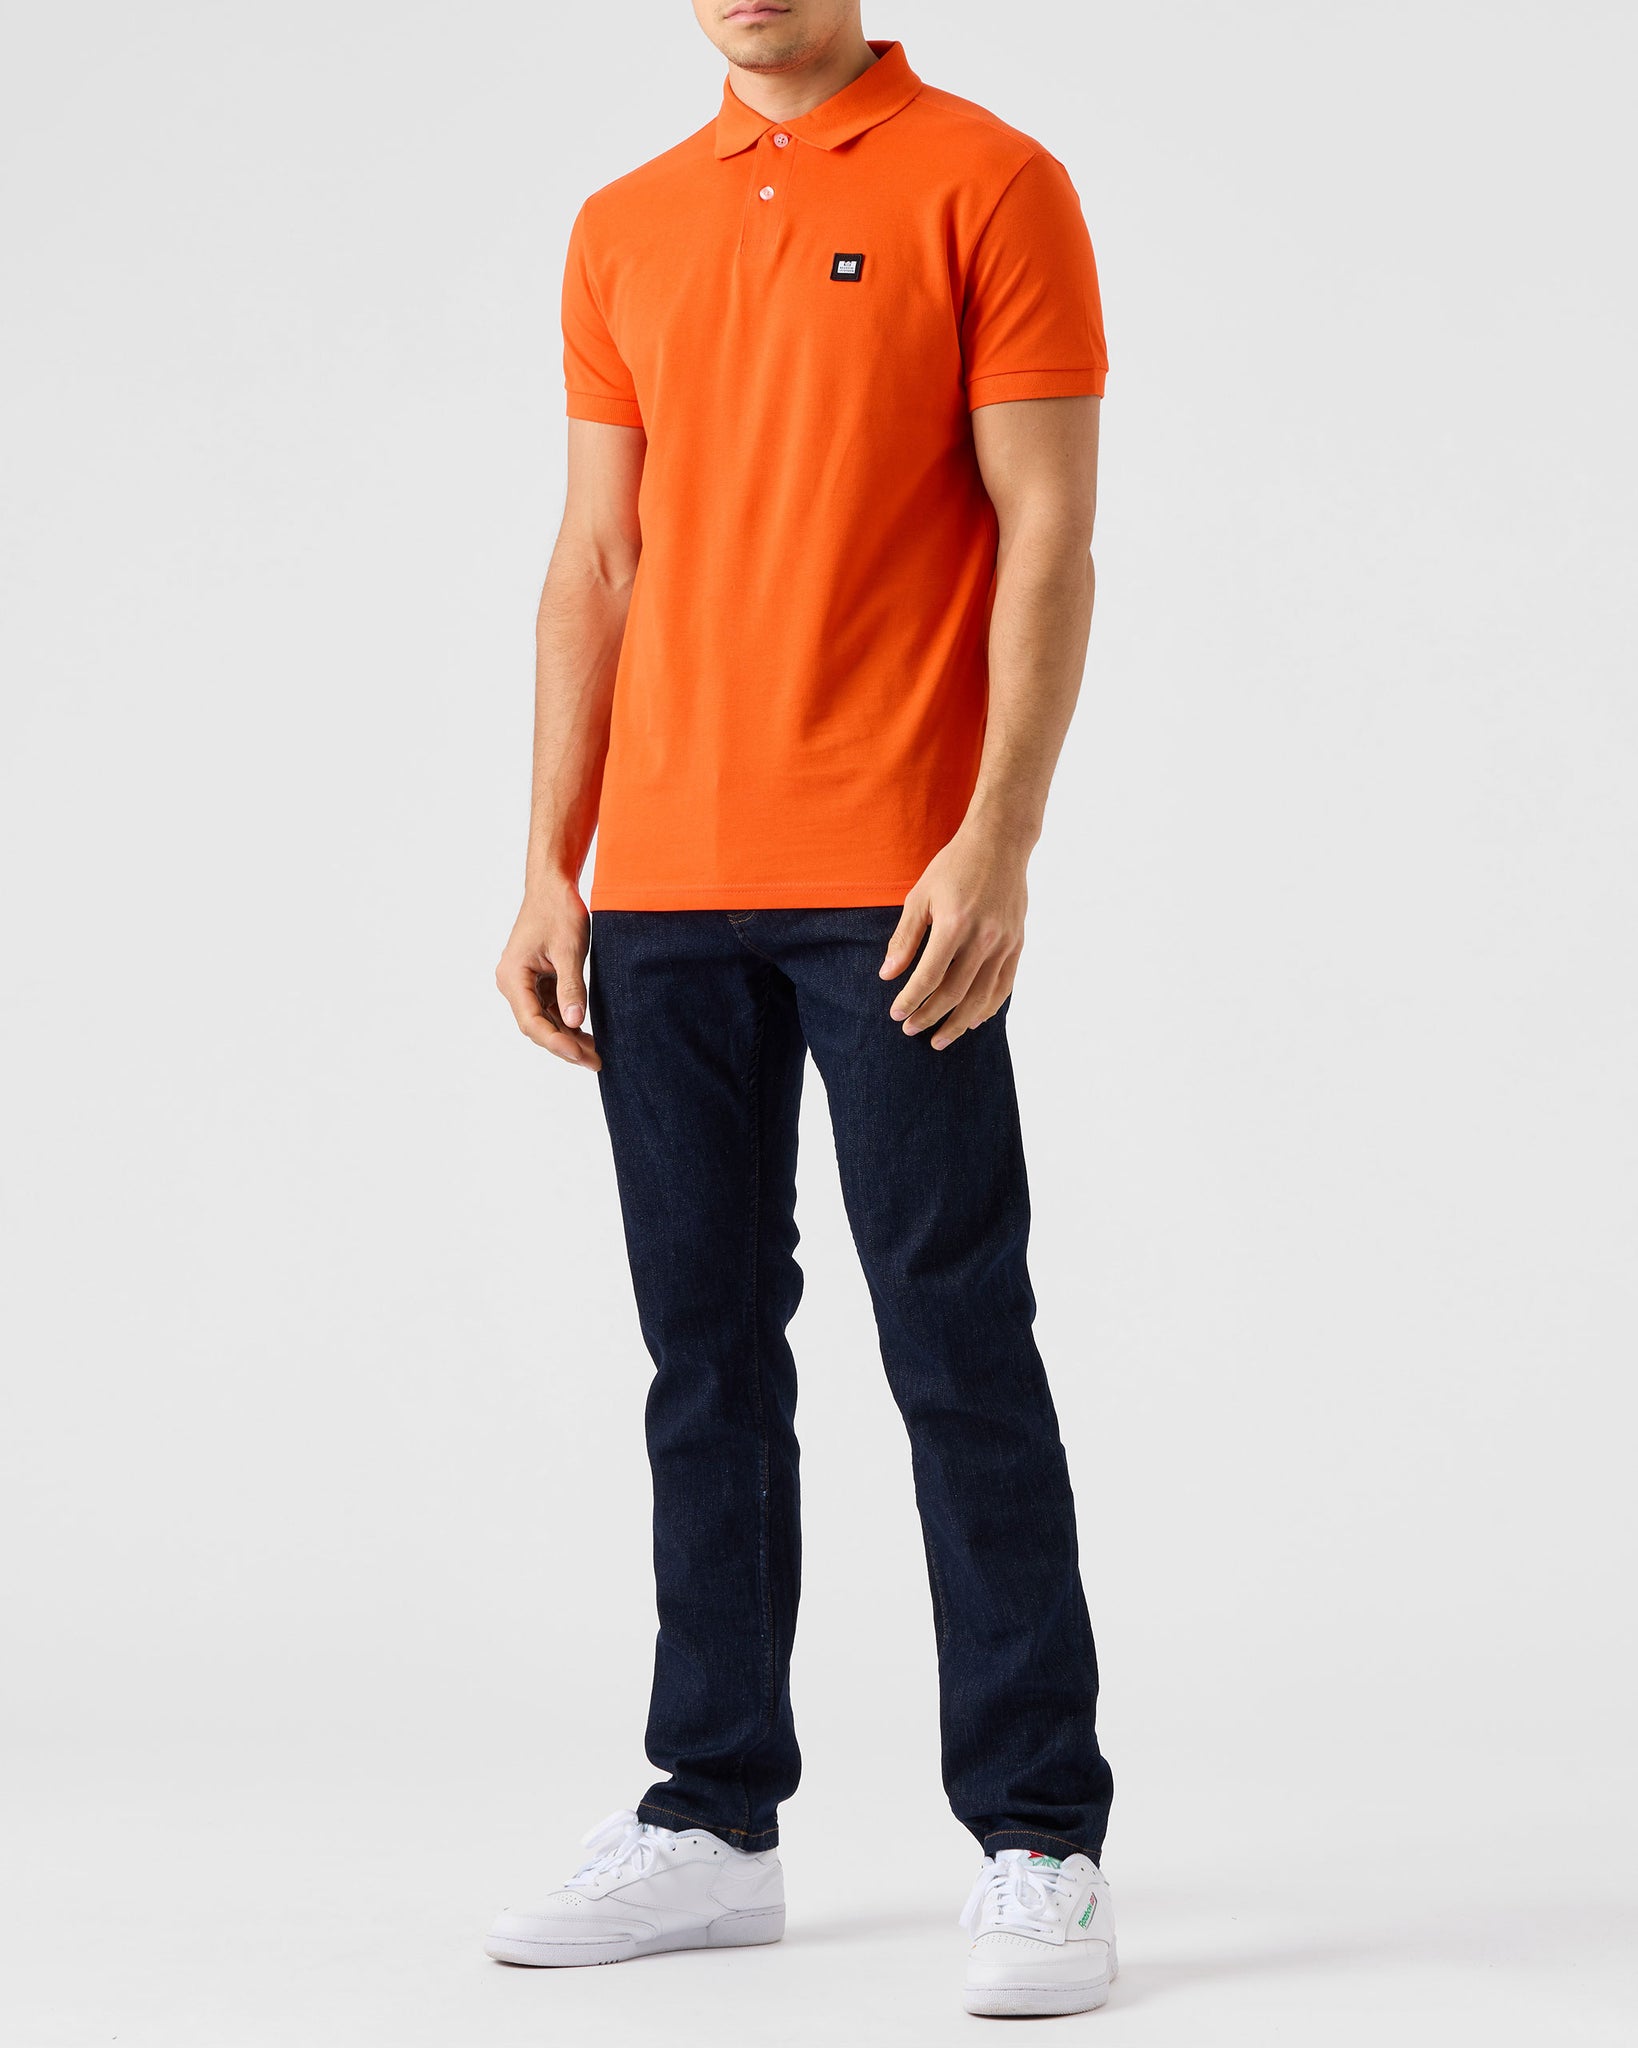 Caneiros Polo Shirt Orange Fizz